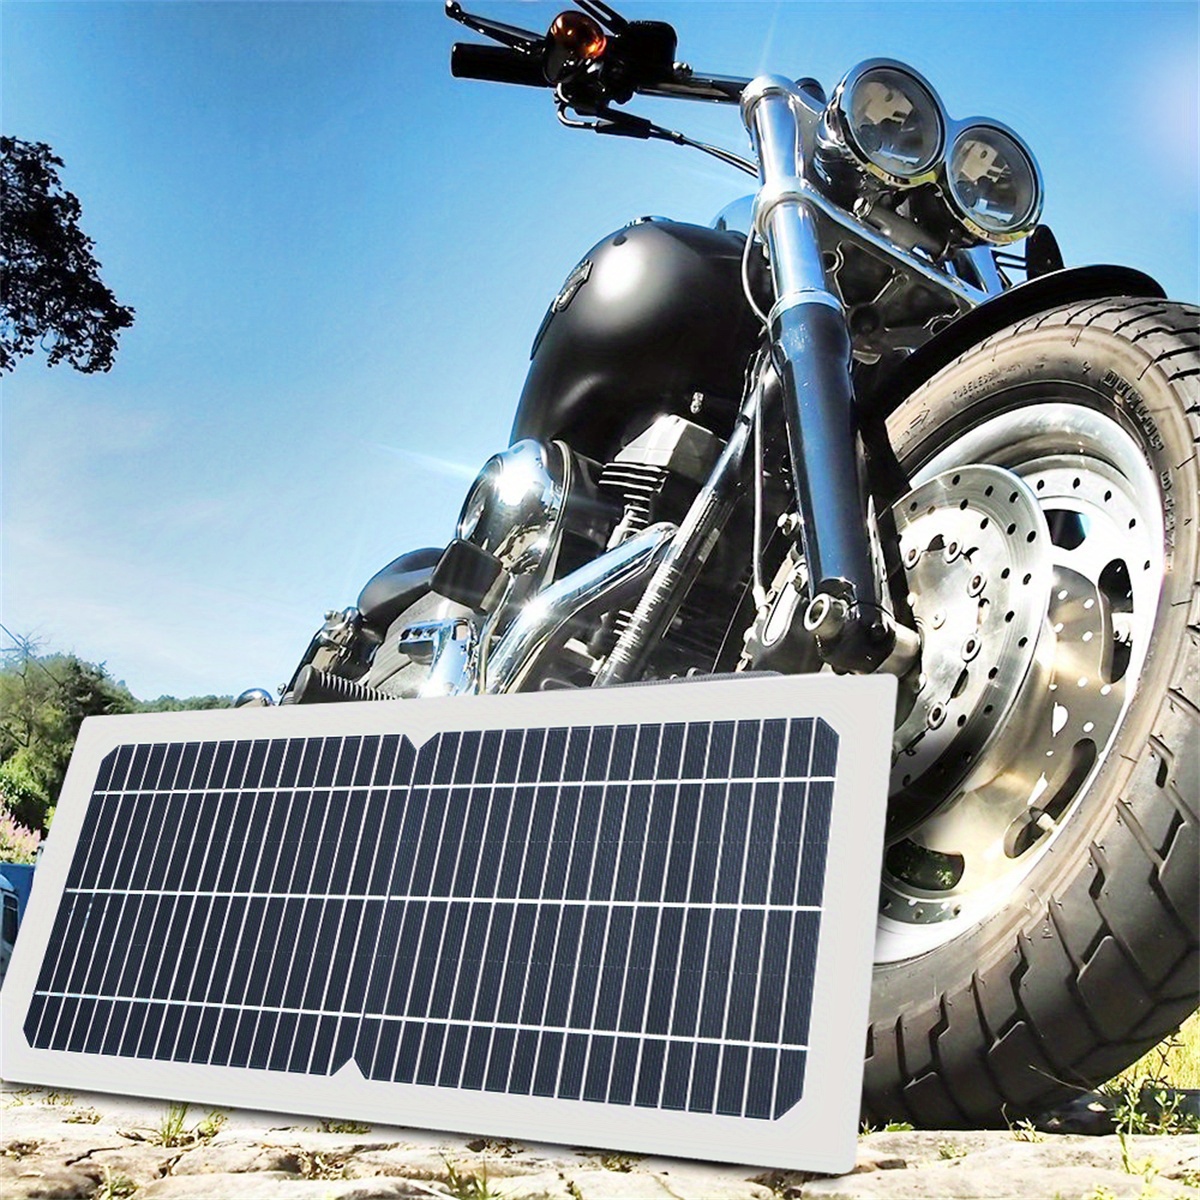 OYMSAE - Cargador de batería solar portátil de 30 W/12 V, con panel solar  de 30 W y 12 V, enchufe para encendedor de cigarrillos y clip de cocodrilo